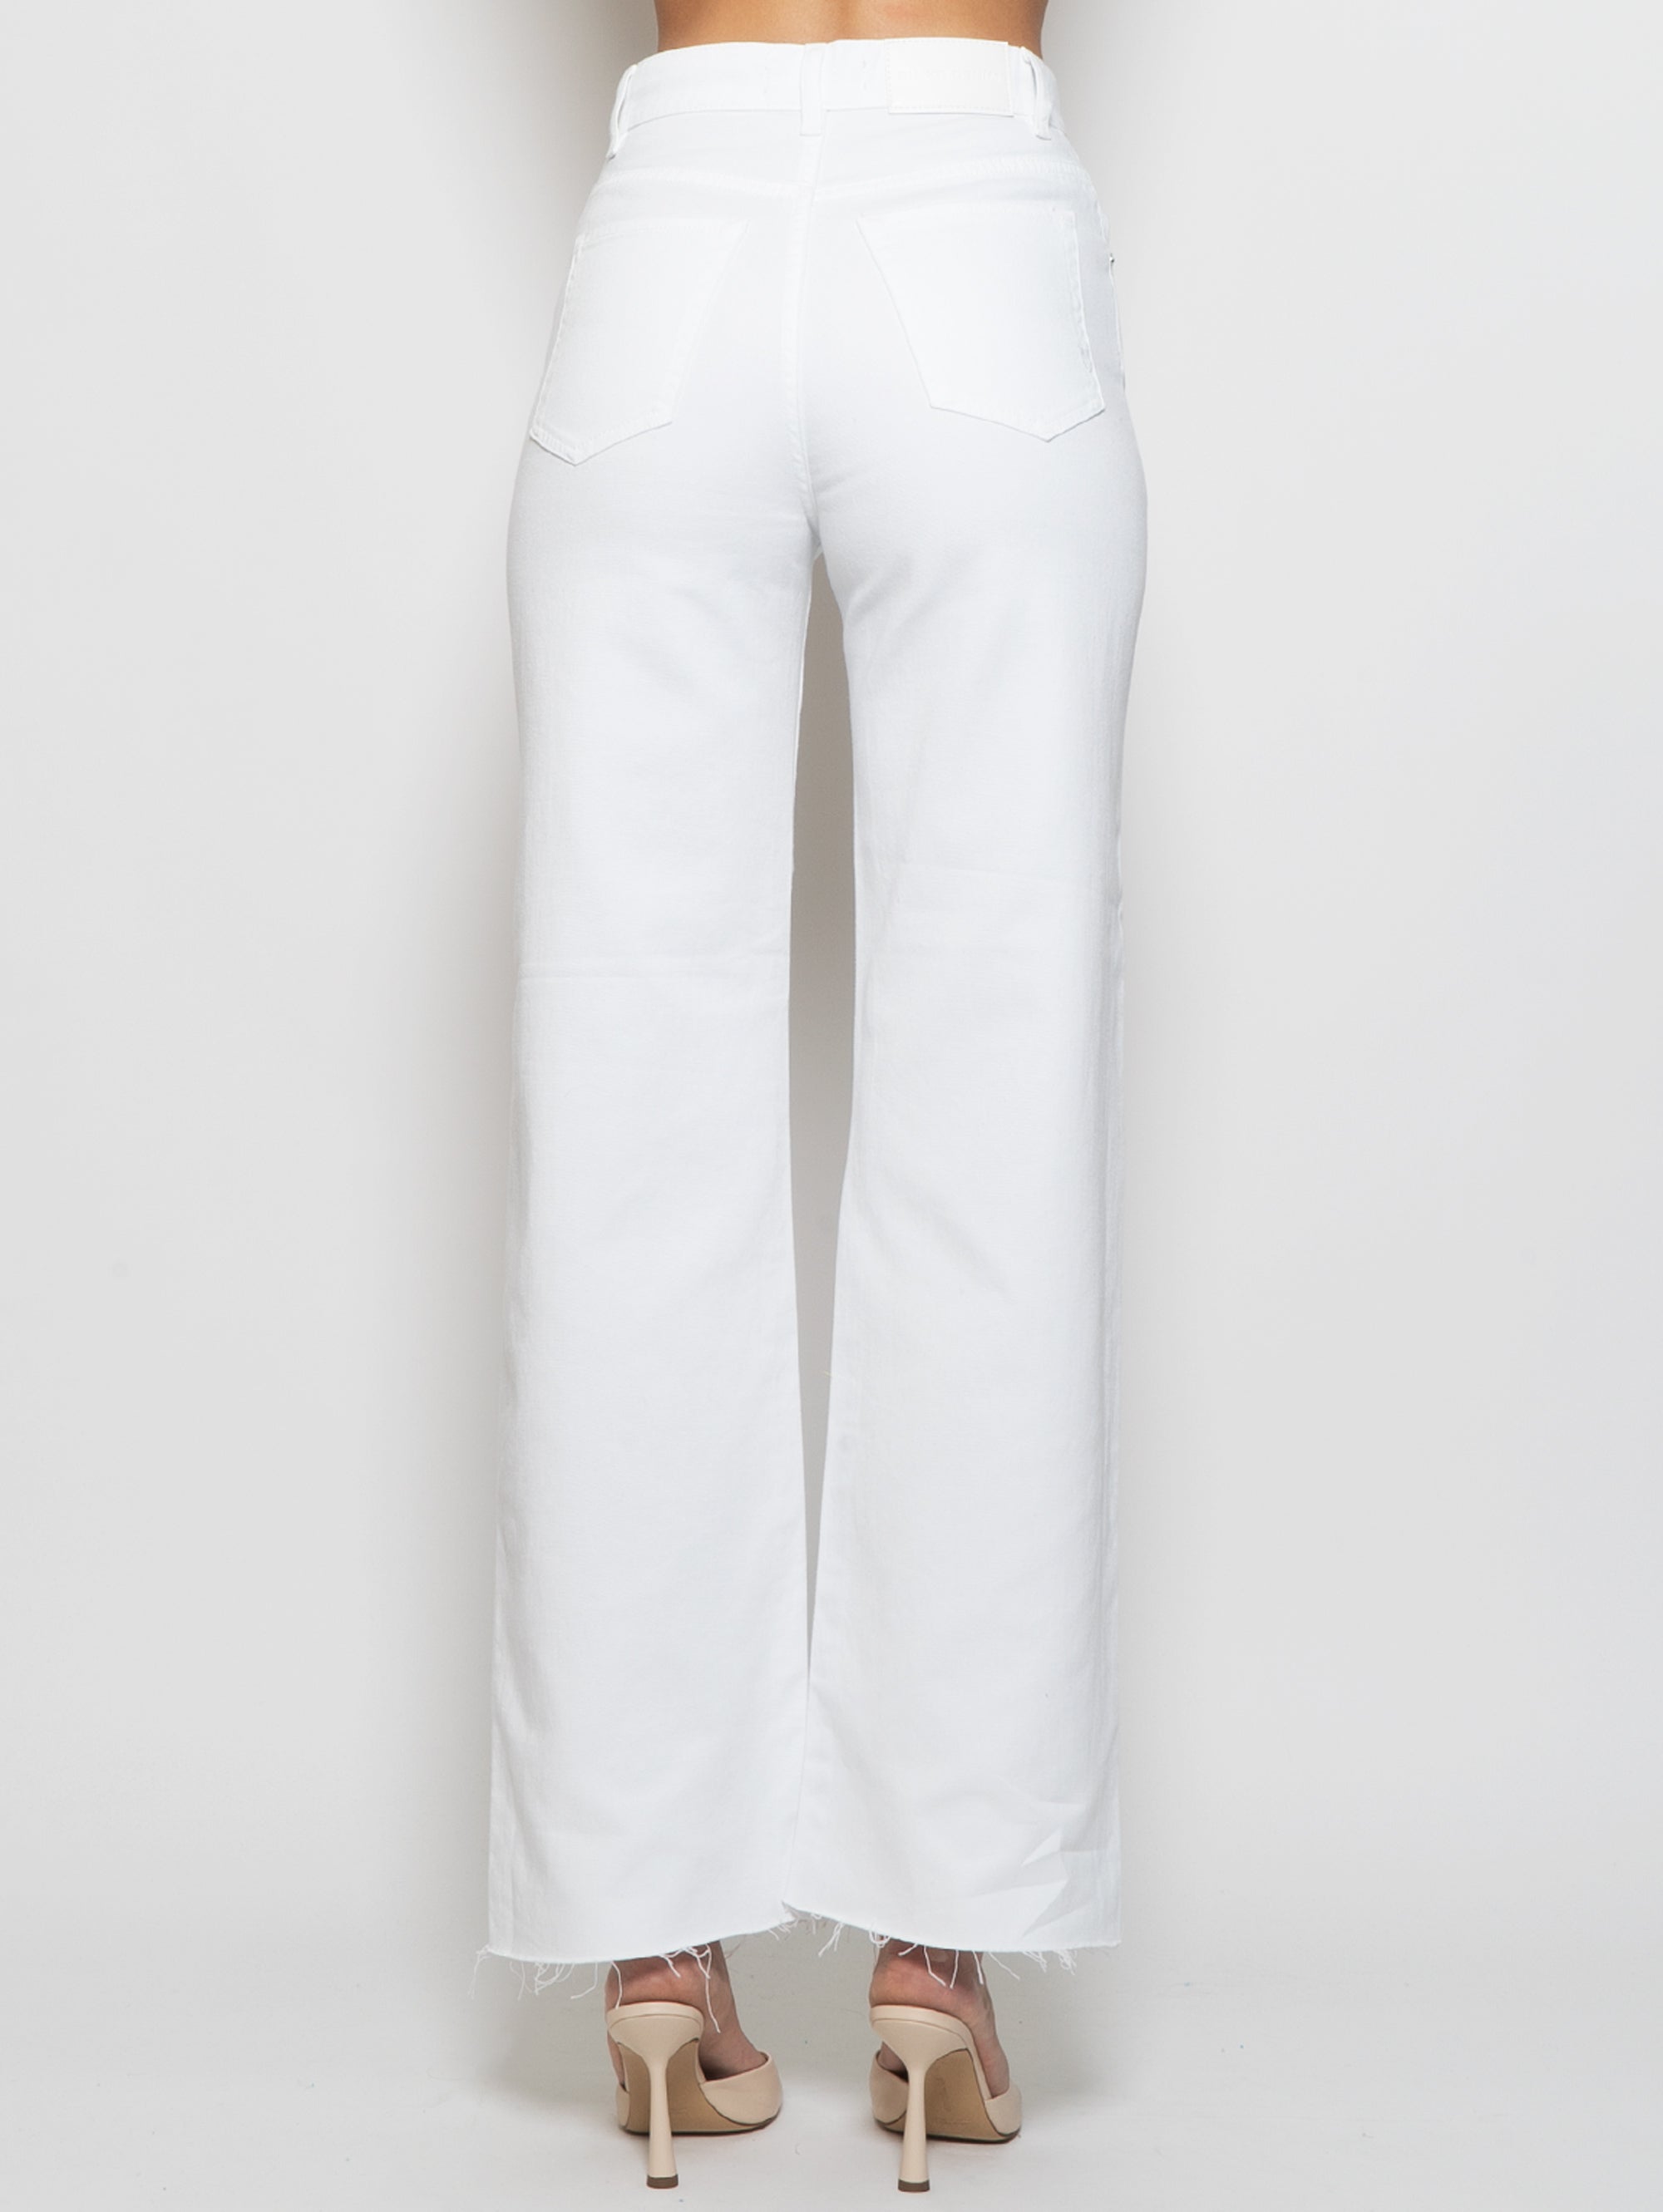 Bull-Jeans aus weißer Baumwolle